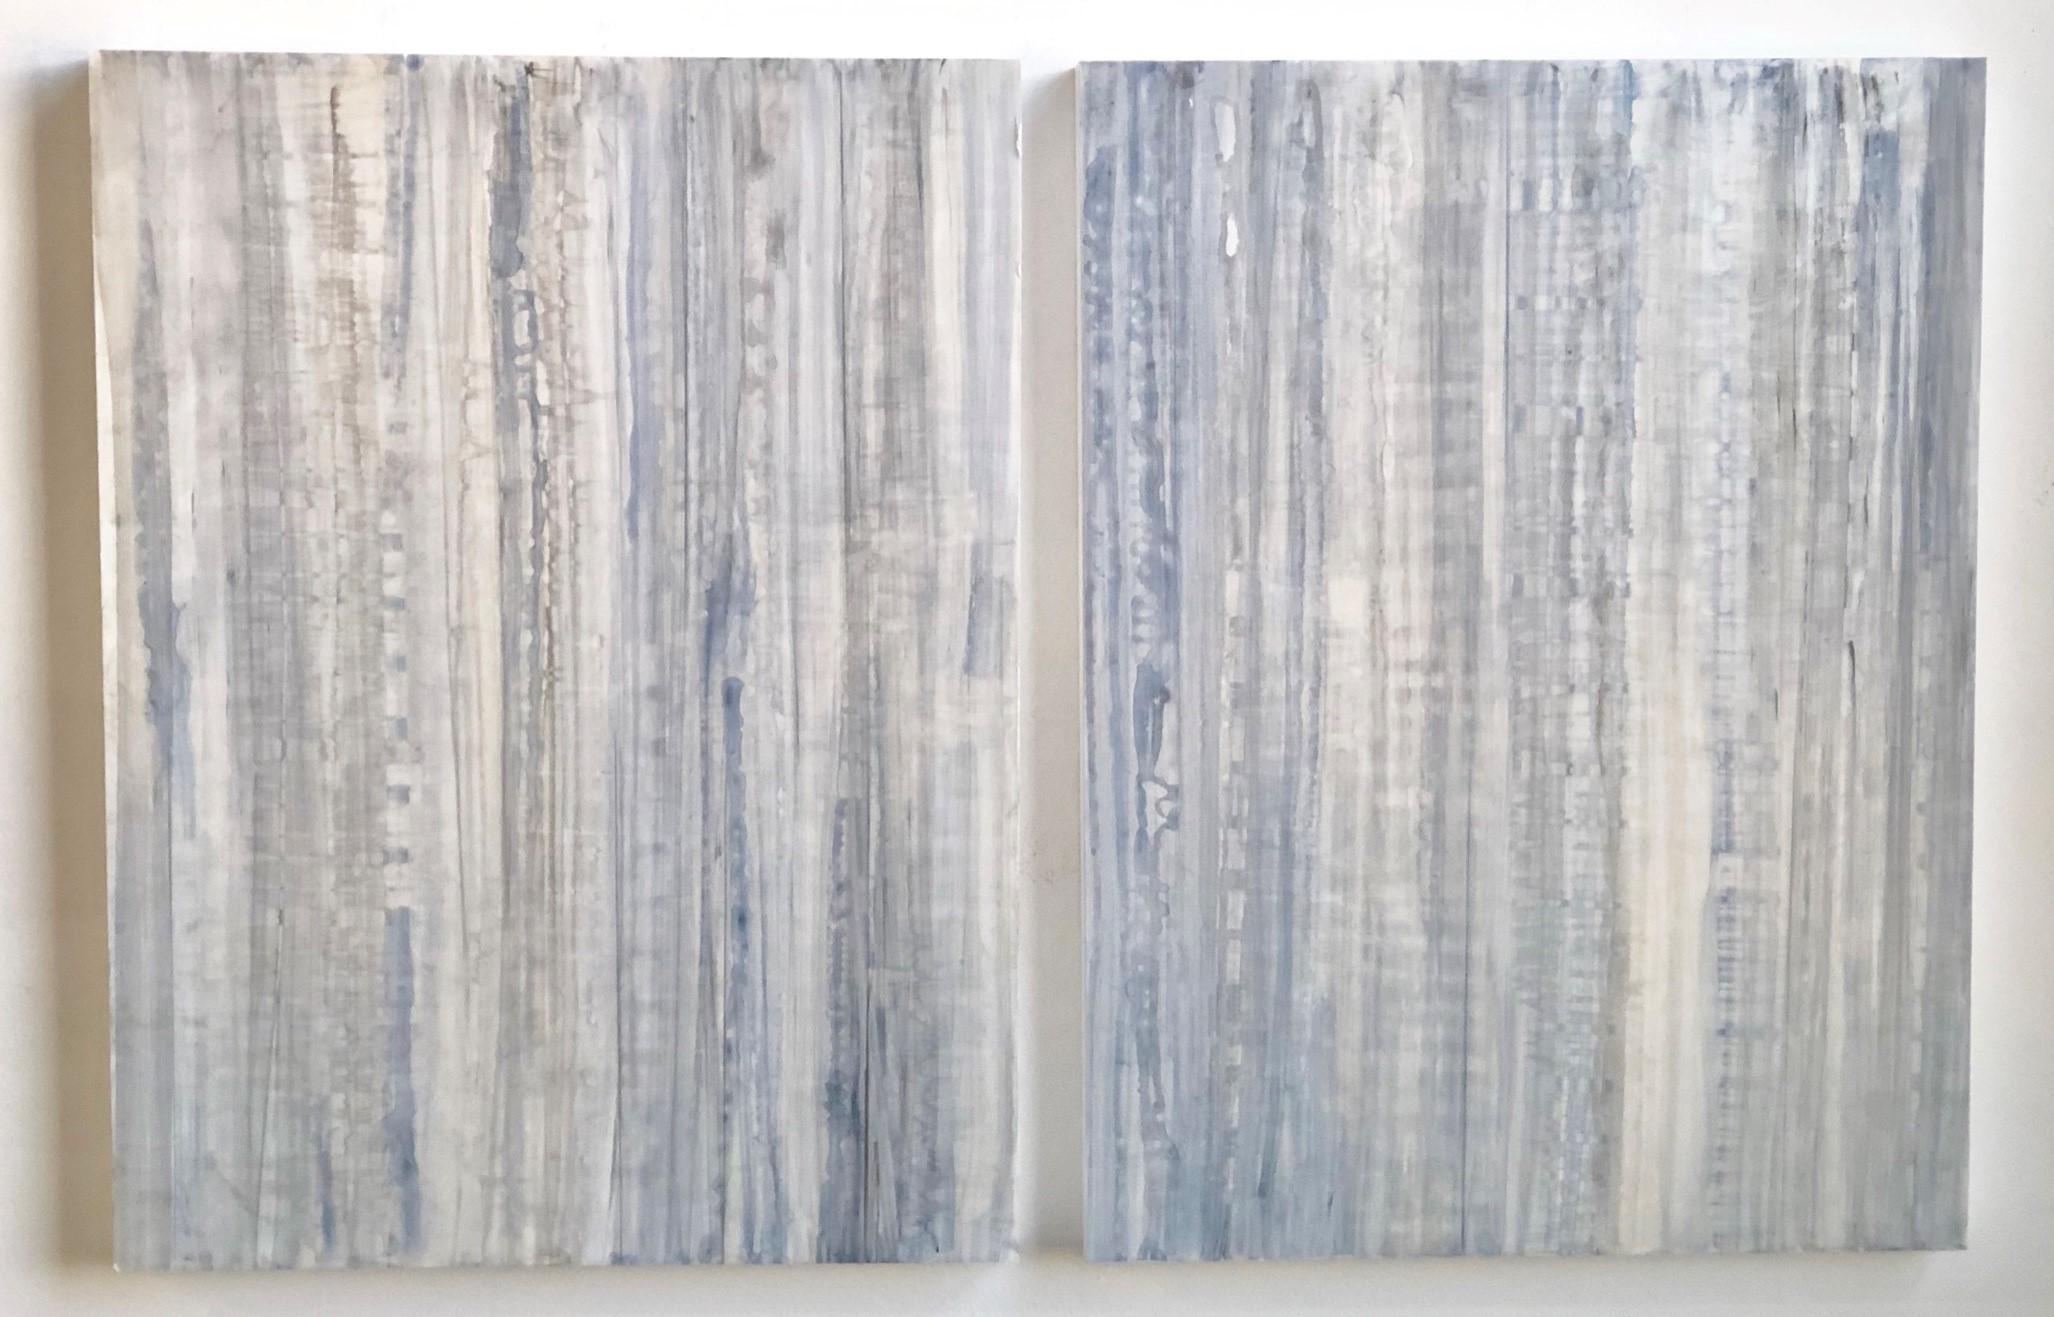 Von der Natur inspiriertes minimalistisches abstraktes Farbfeldgemälde auf zwei Holztafeln in hellen, eisblauen, weißen und grauen Tönen 
Acryl auf zwei Holzplatten, jede Platte ist 18 x 24 x 1,5 Zoll groß
Empfohlen wird ein Abstand von 1-2 Zoll